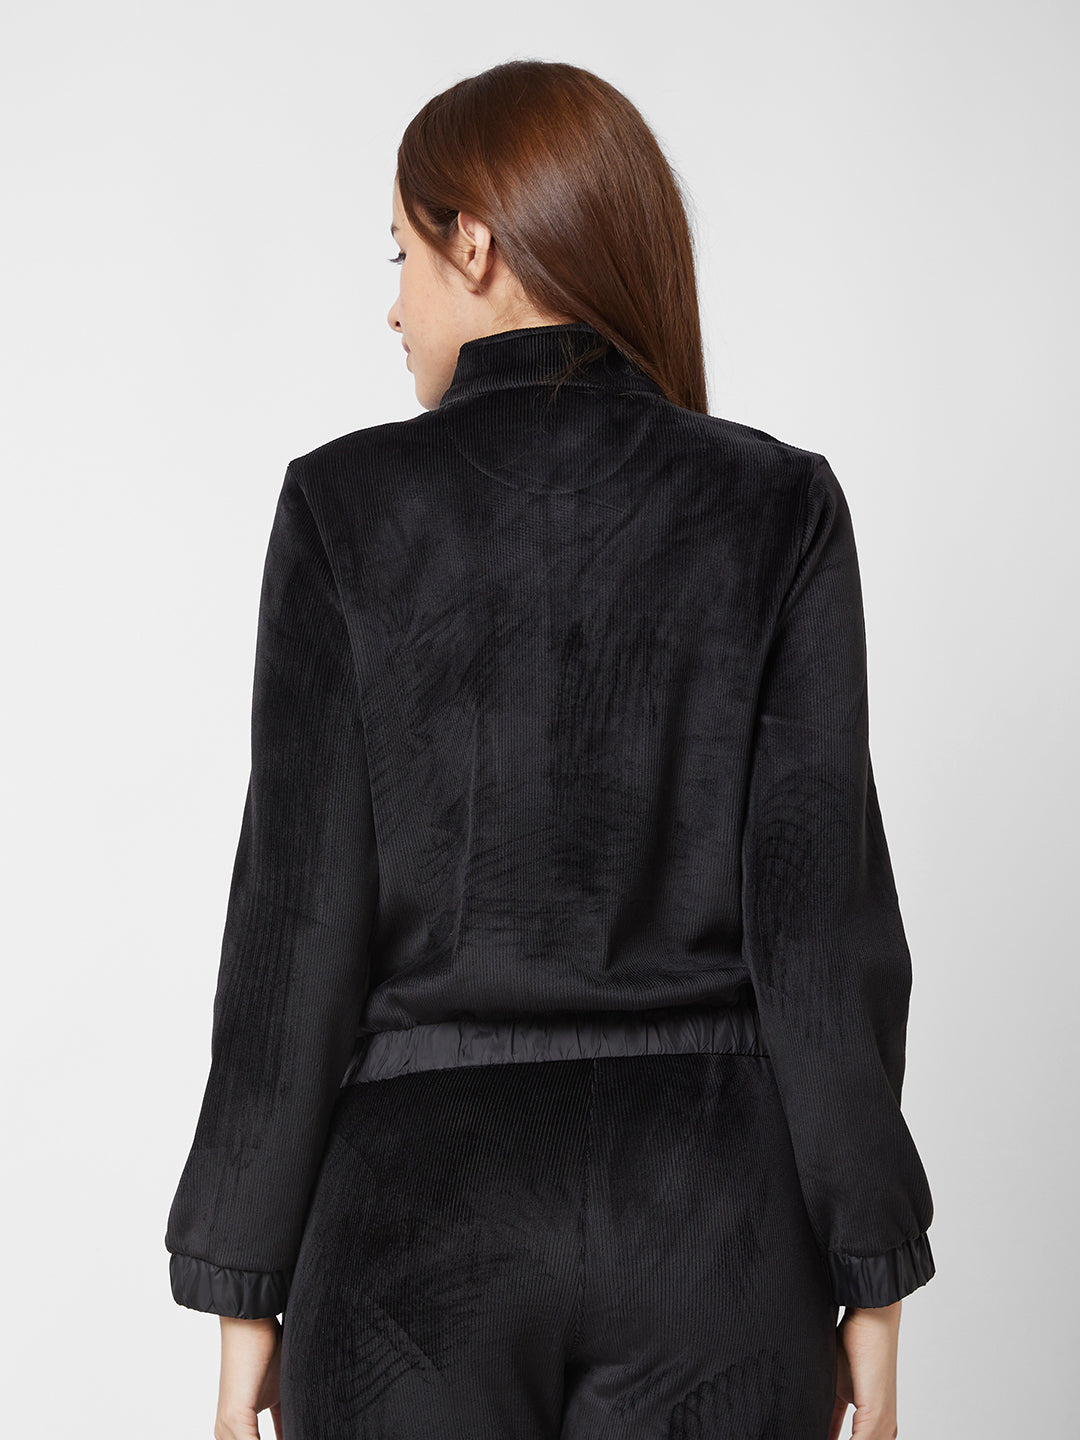 Spykar Regular Fit High Neck Full Sleeve Black Jacket For Women